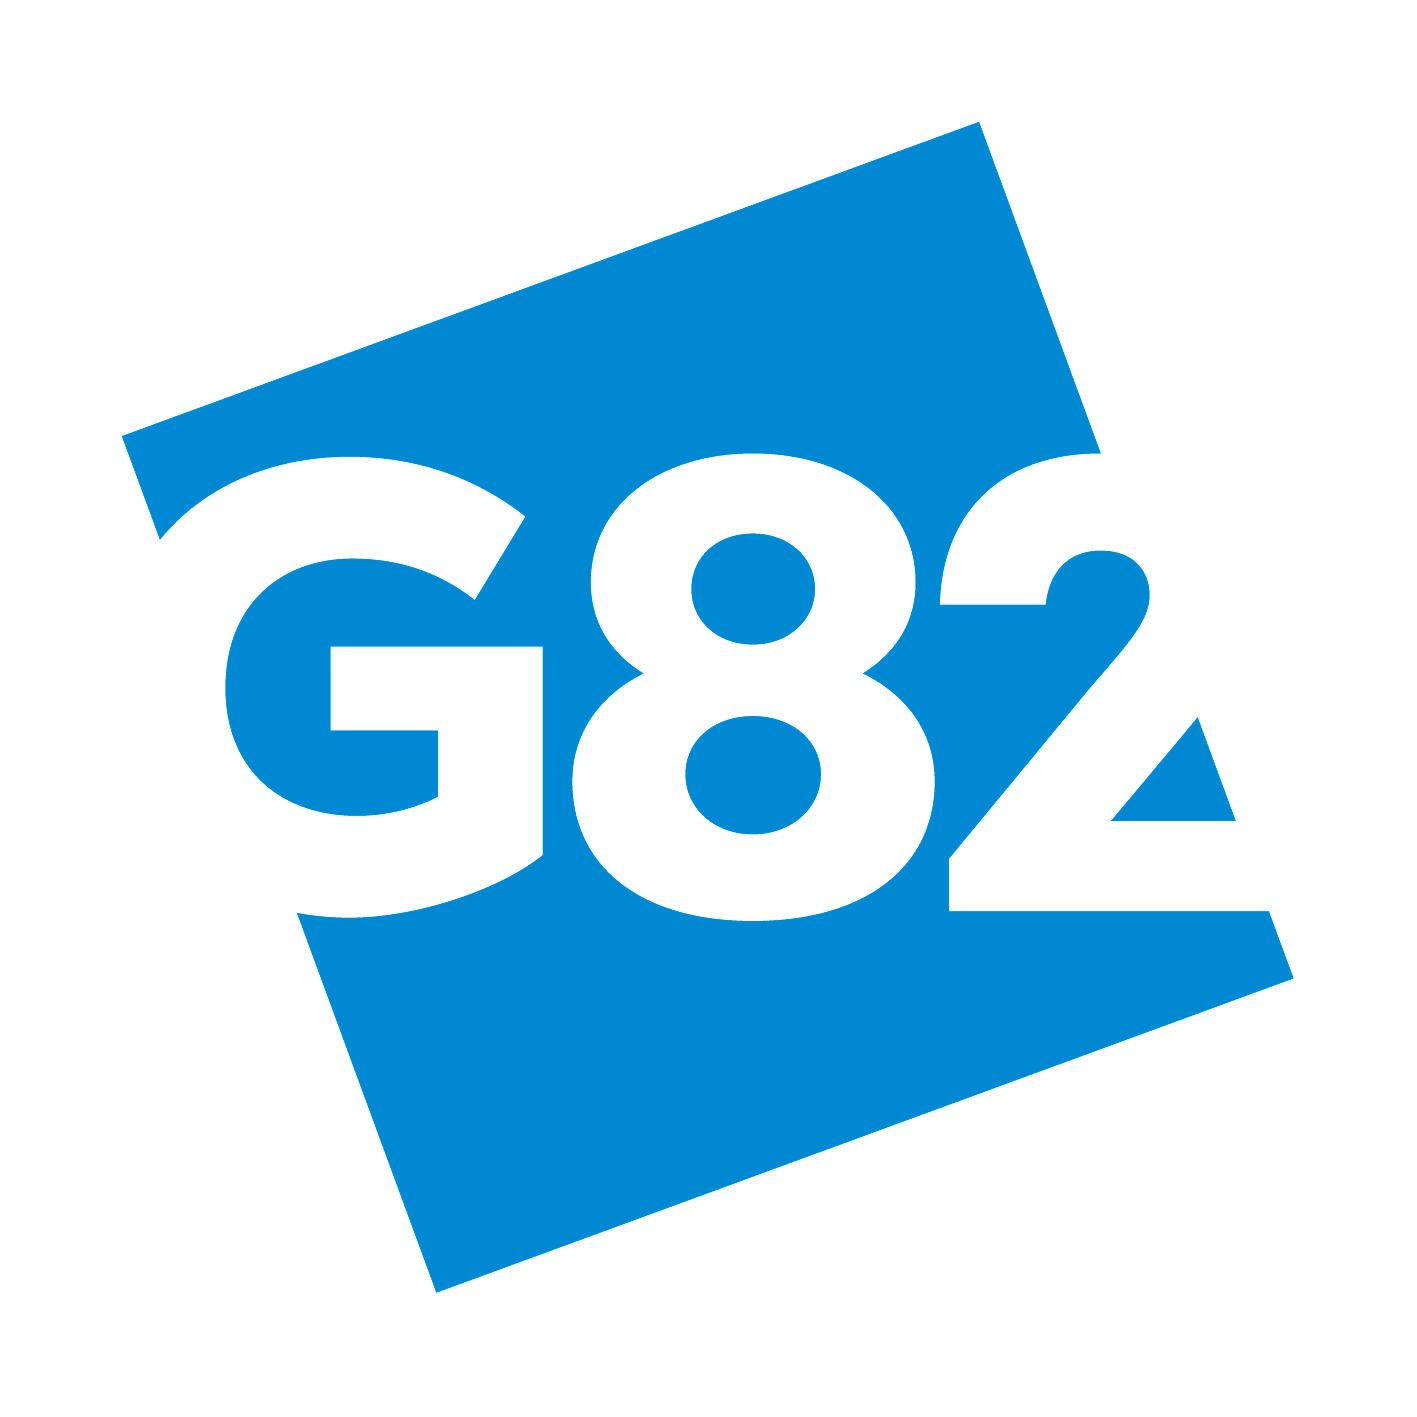 G82